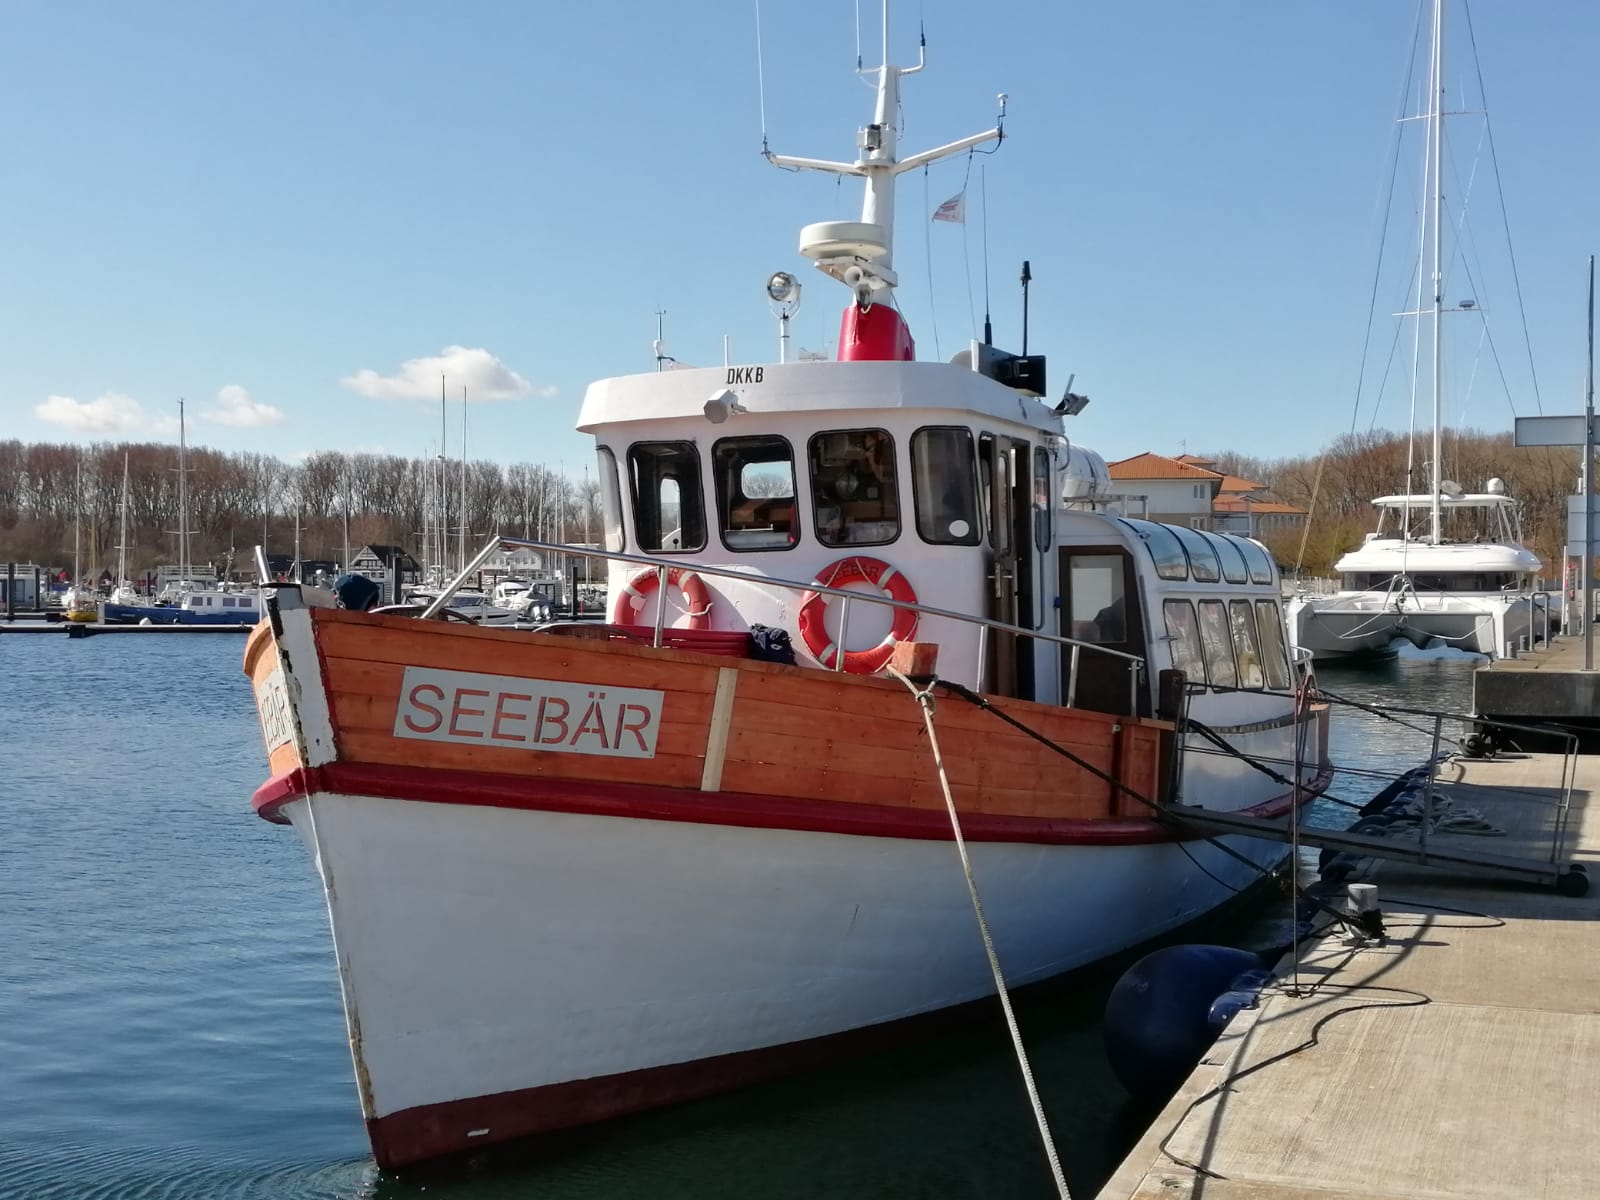 Die MS Seebär ist ein Ausflugsschiff, welches von der Weißes Wiek ablegt. Hier sieht und erlebt man die Ostsee von einer ganz neuen Seite